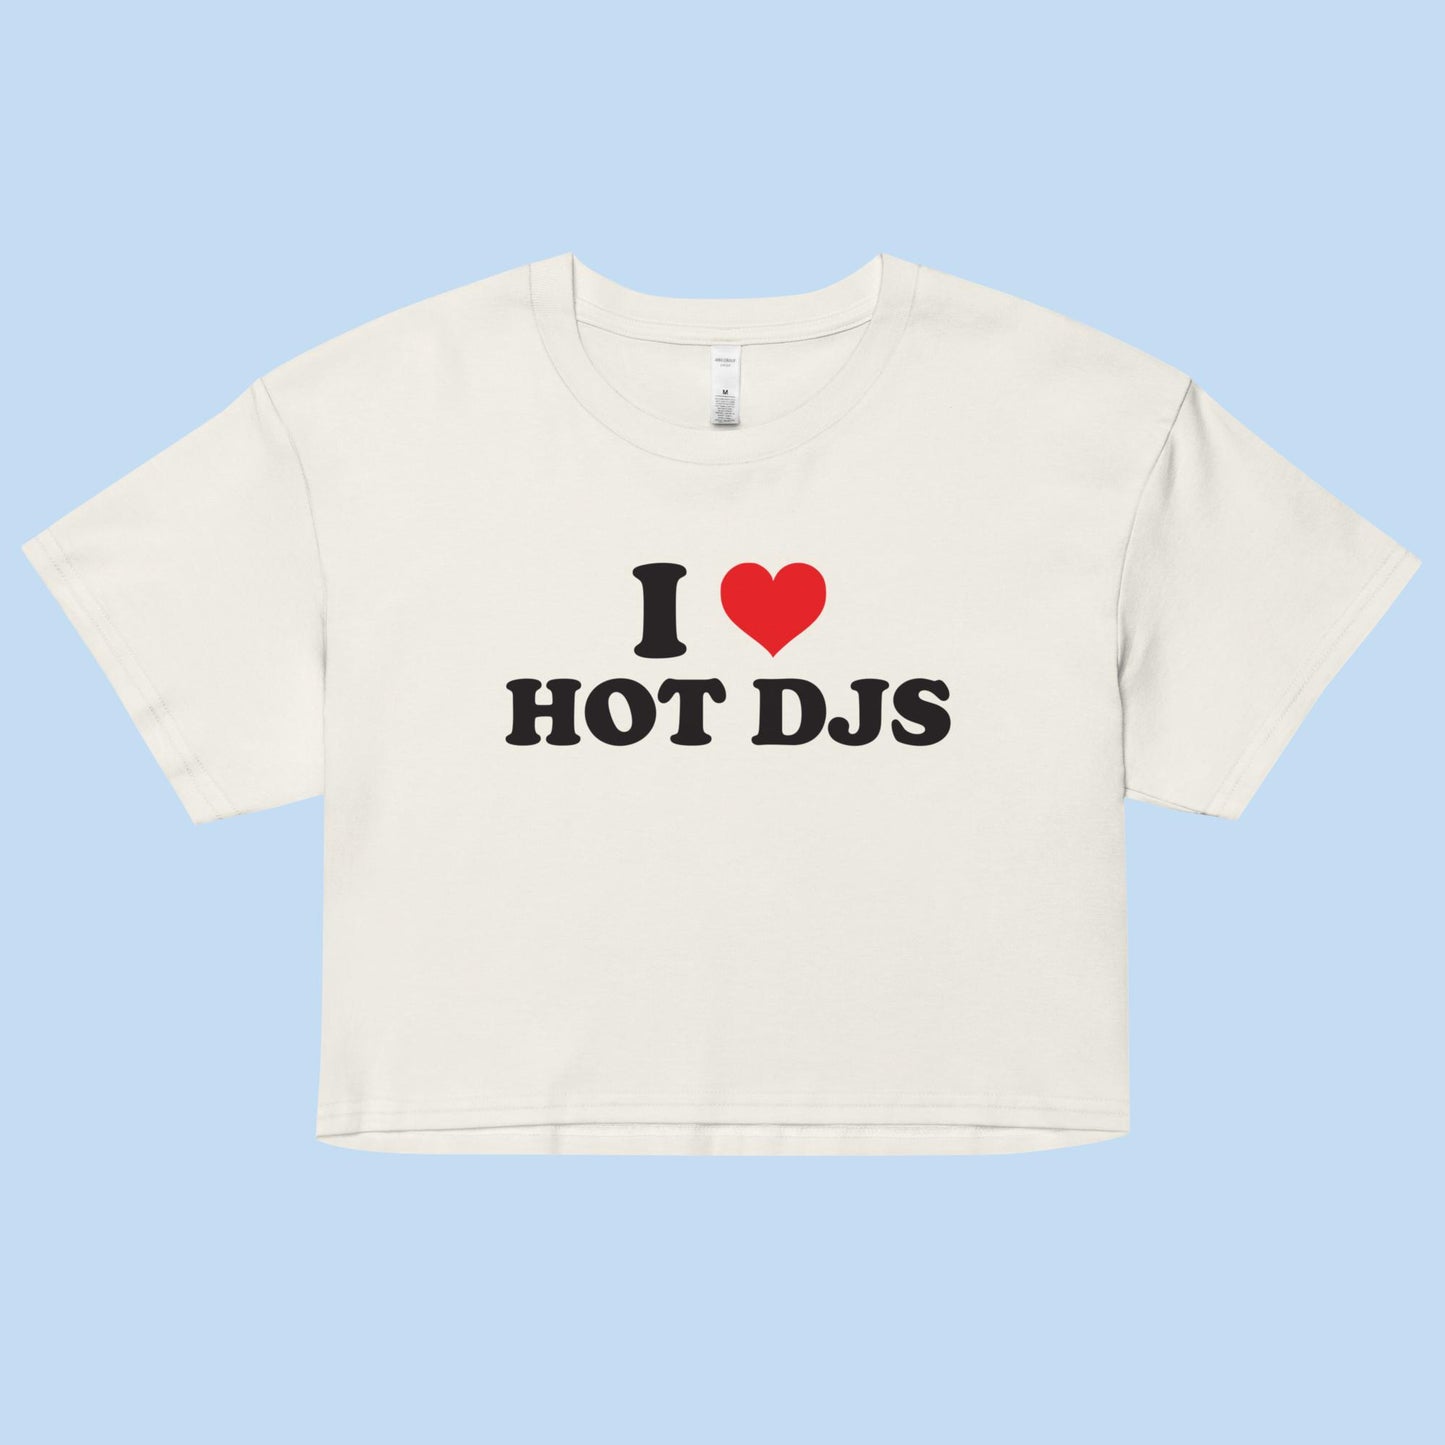 I Love Hot DJs Women’s Boxy Crop Top